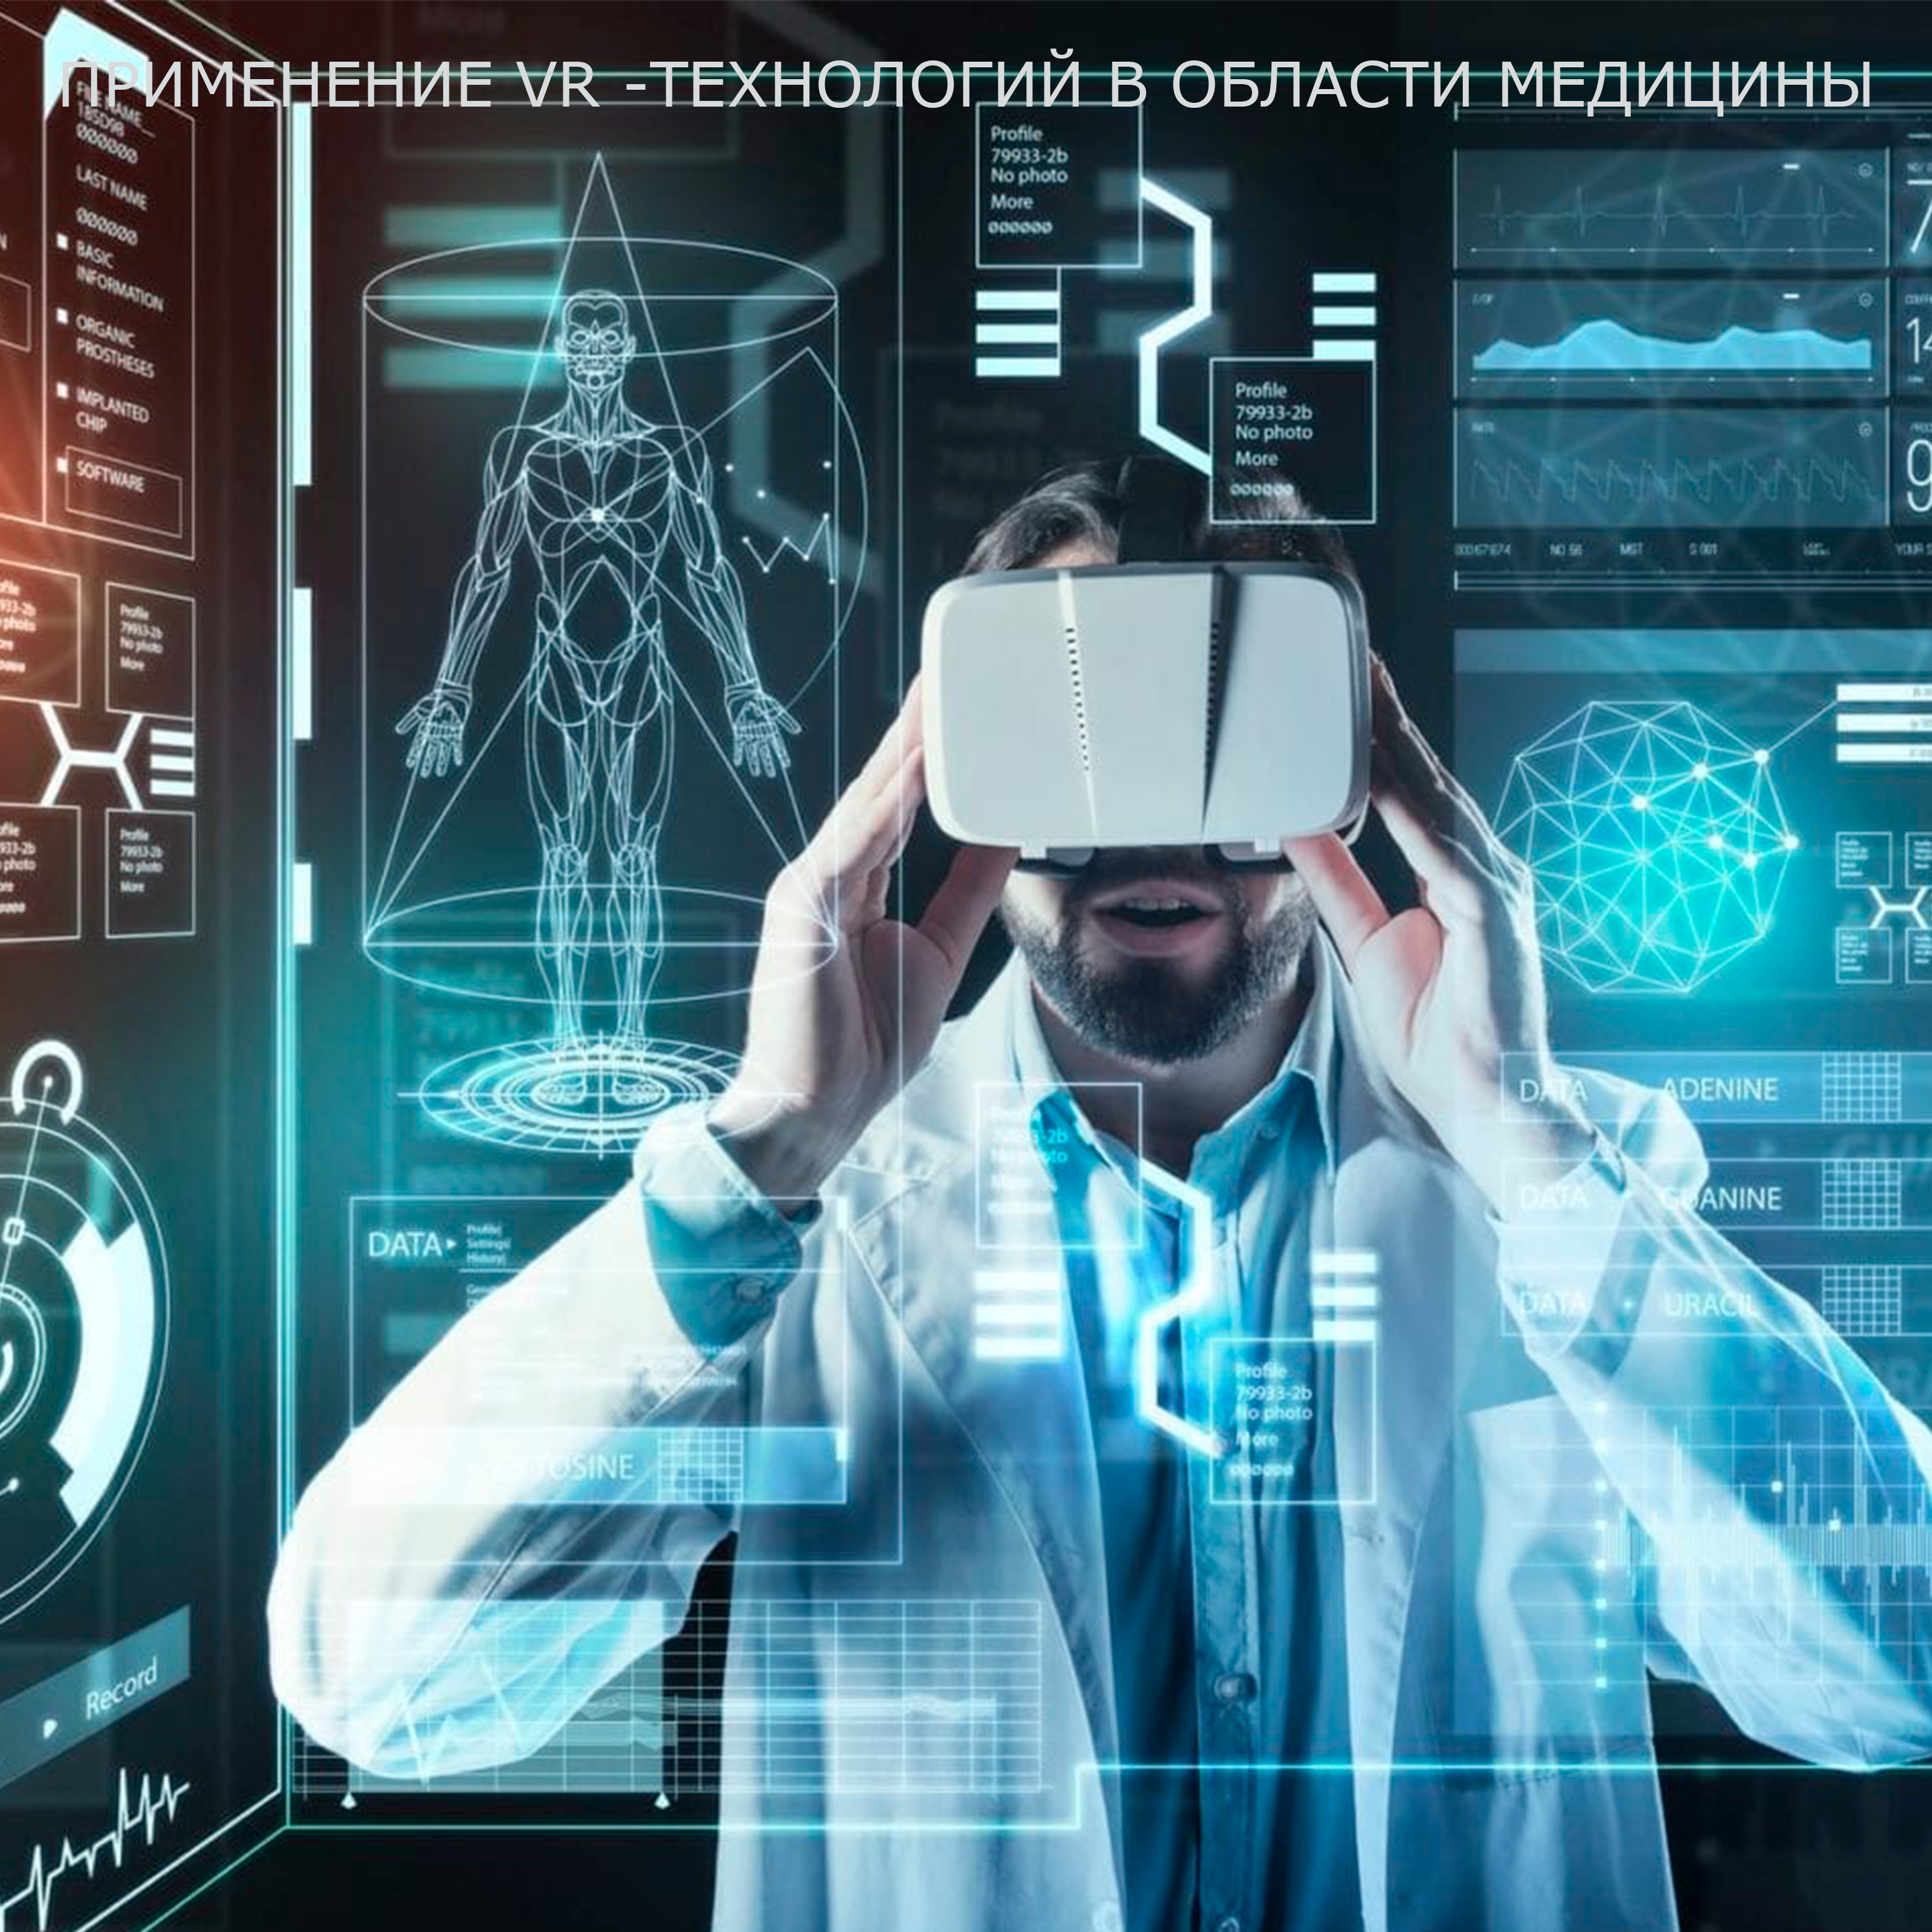 Его также используют современные. Инновационные технологии в медицине. Технологии будущего в медицине. Sovremennye tehnologiyi v medisine. VR технологии в медицине.